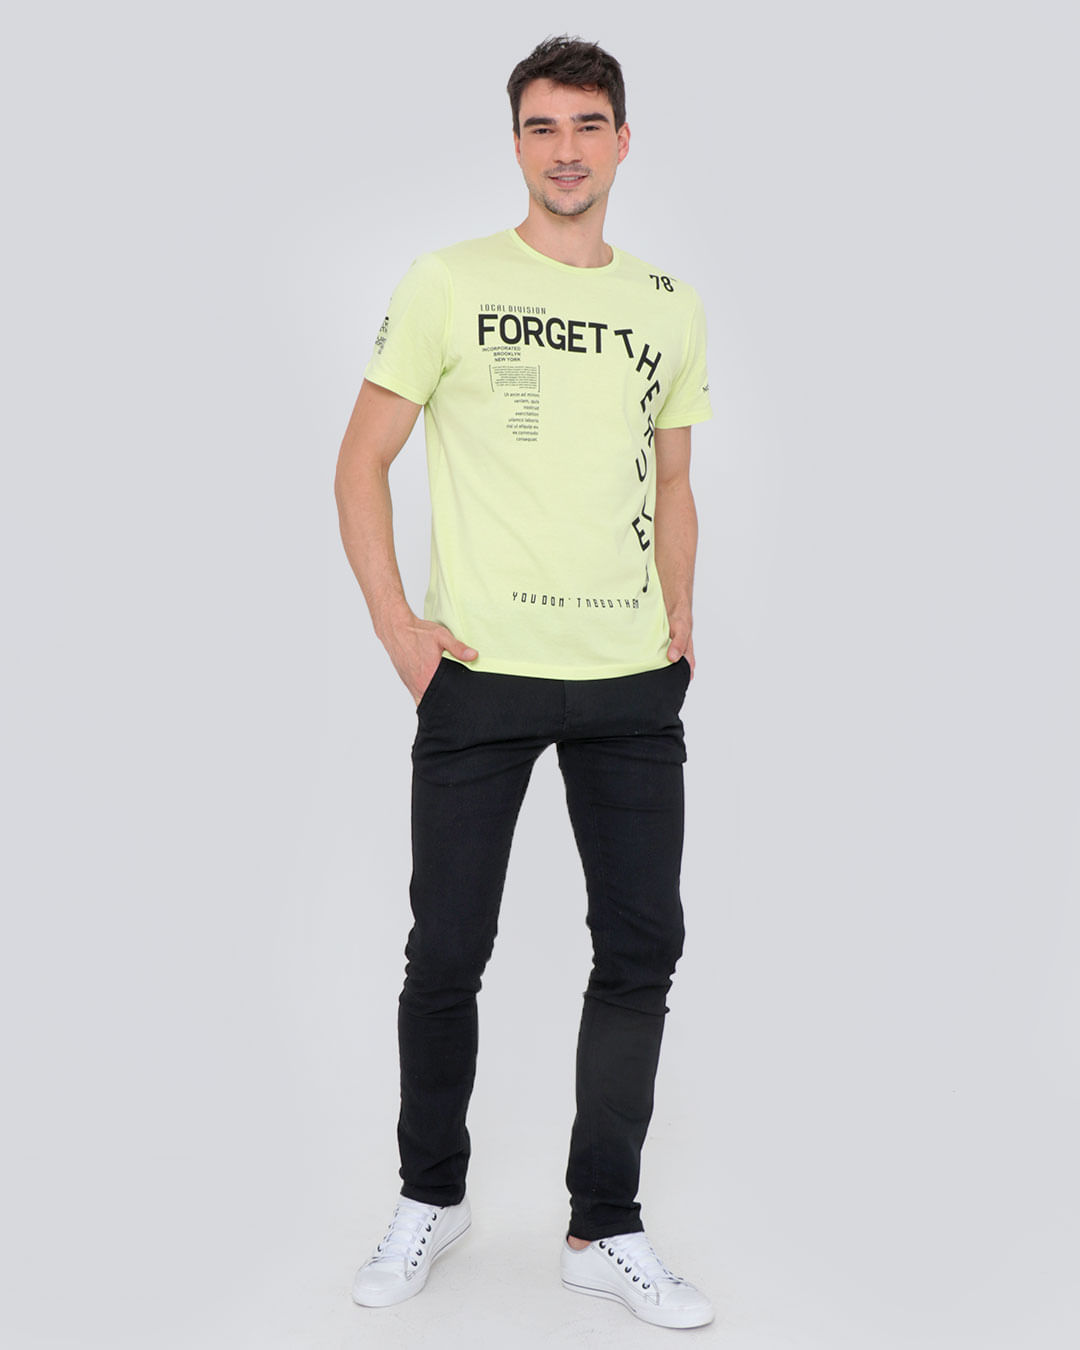 Camiseta-Estampa-Frontal-Verde-Claro